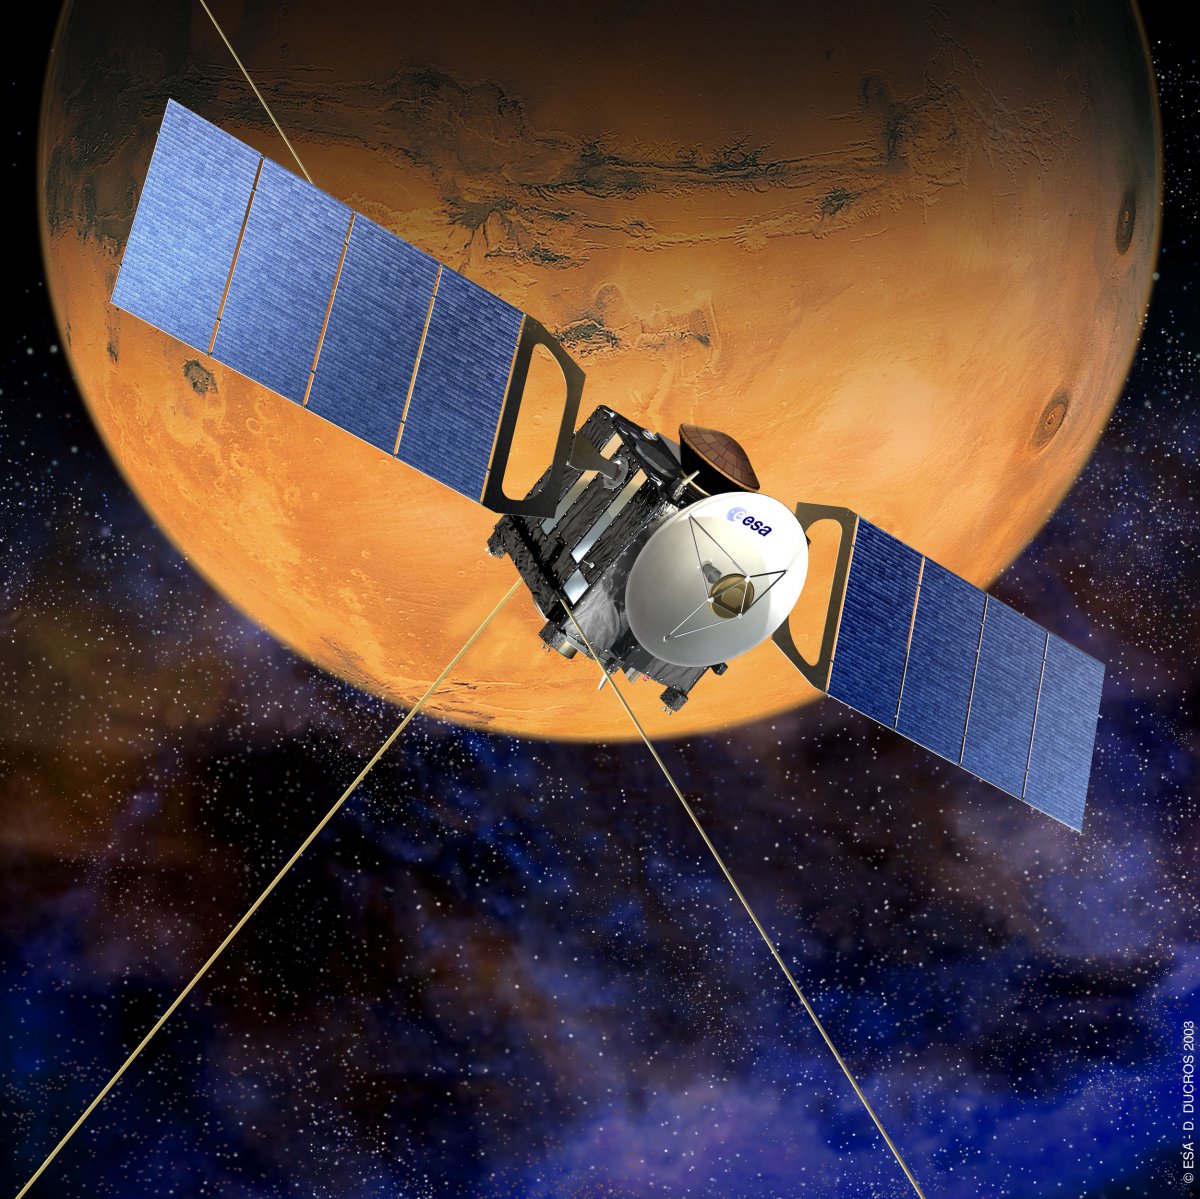 ‘Récord único’: la sonda Mars Express de la ESA sirve como relevo para la séptima misión